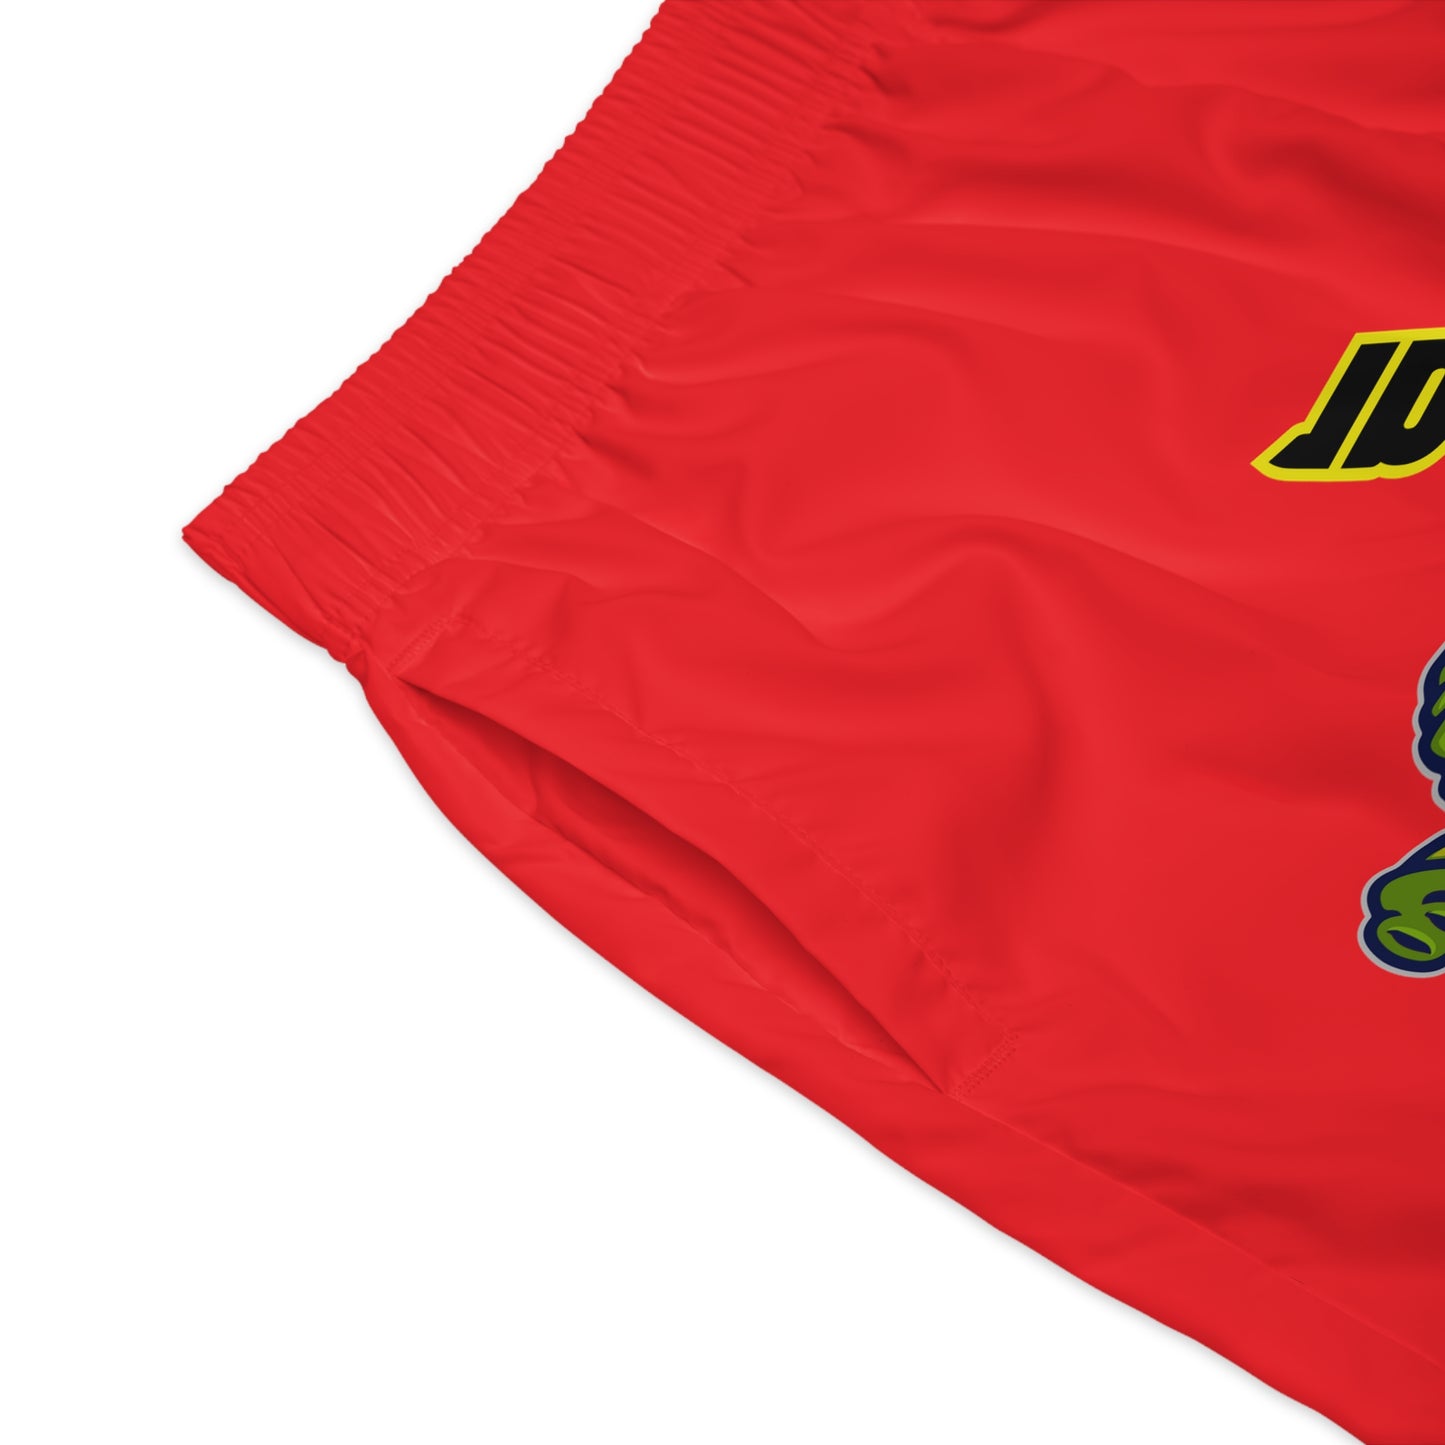 Red Flawdawear Flawda Mane “On A Lake Wit Tha Skis” Limited Edition OG Men’s Jogguz Playuz Shorts